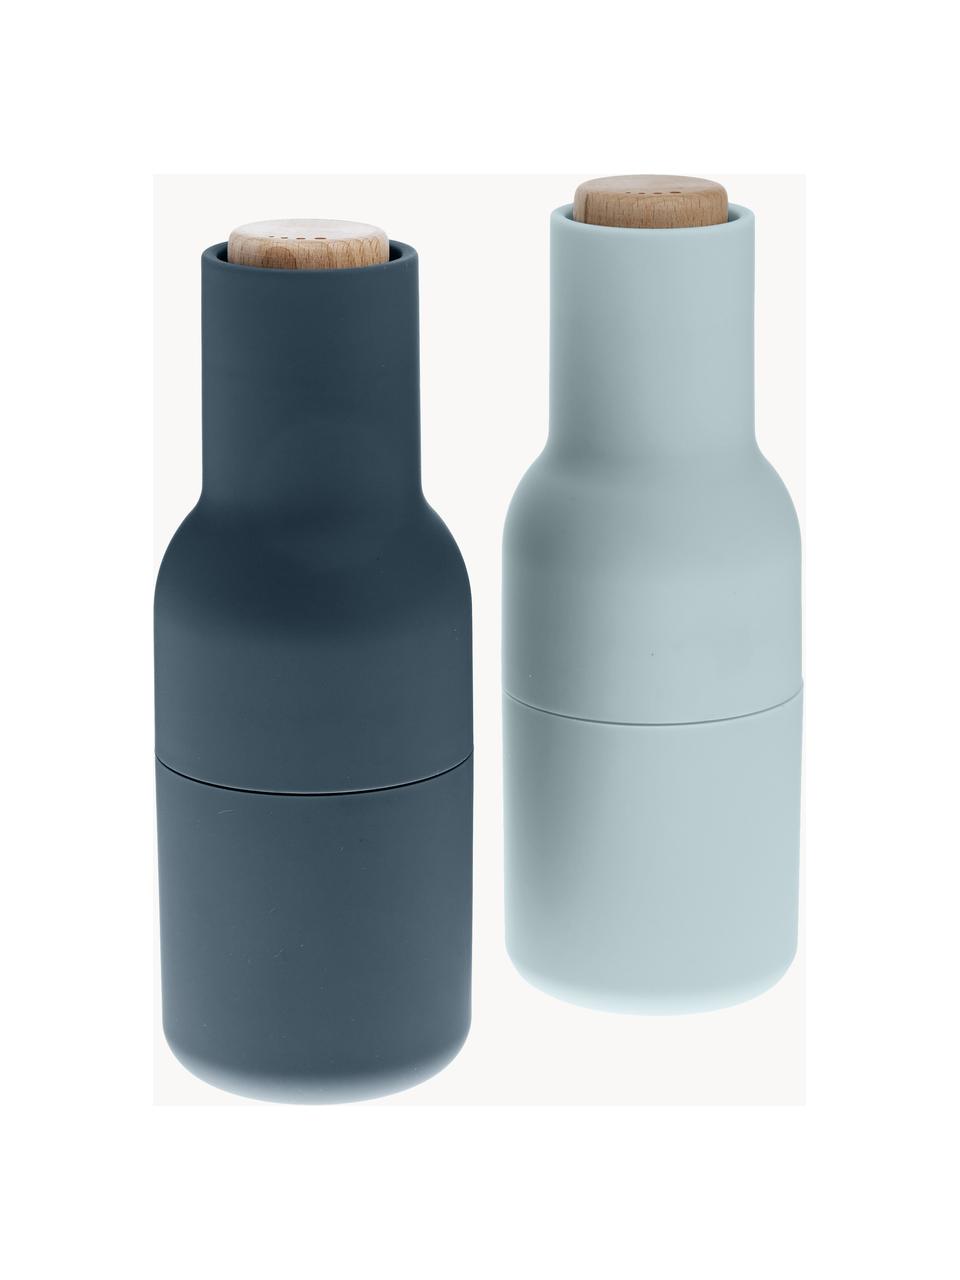 Designer peper- en zoutmolen Bottle Grinder met houten deksel, set van 2, Deksel: hout, Donkerblauw, lichtblauw, hout, Ø 8 x H 21 cm